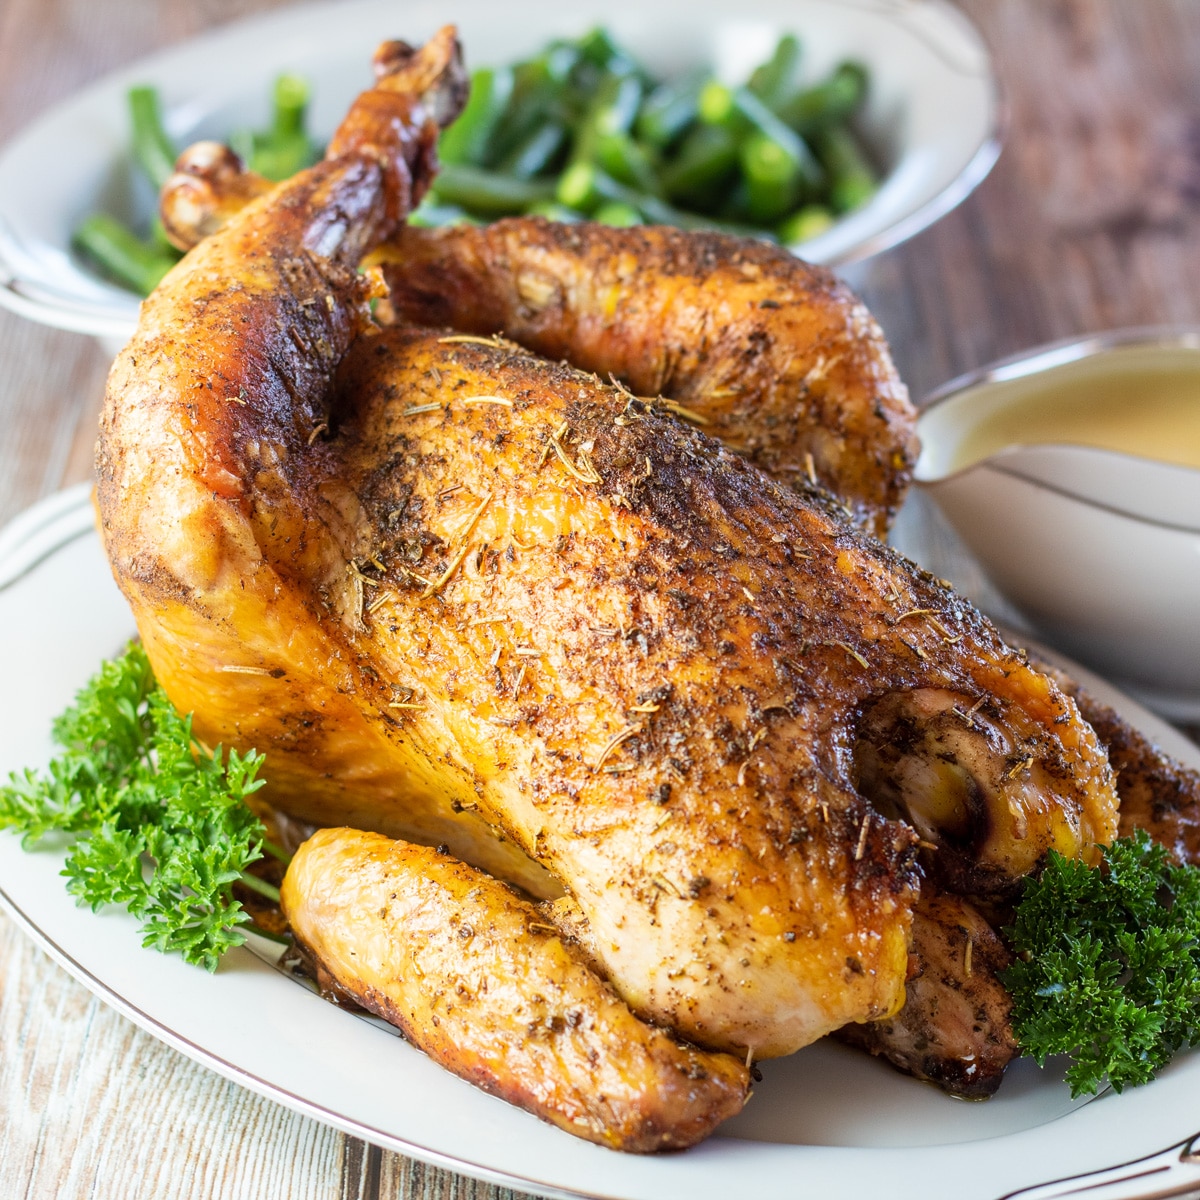 Квадратное изображение жареного цыпленка сассо на сервировочном блюде.